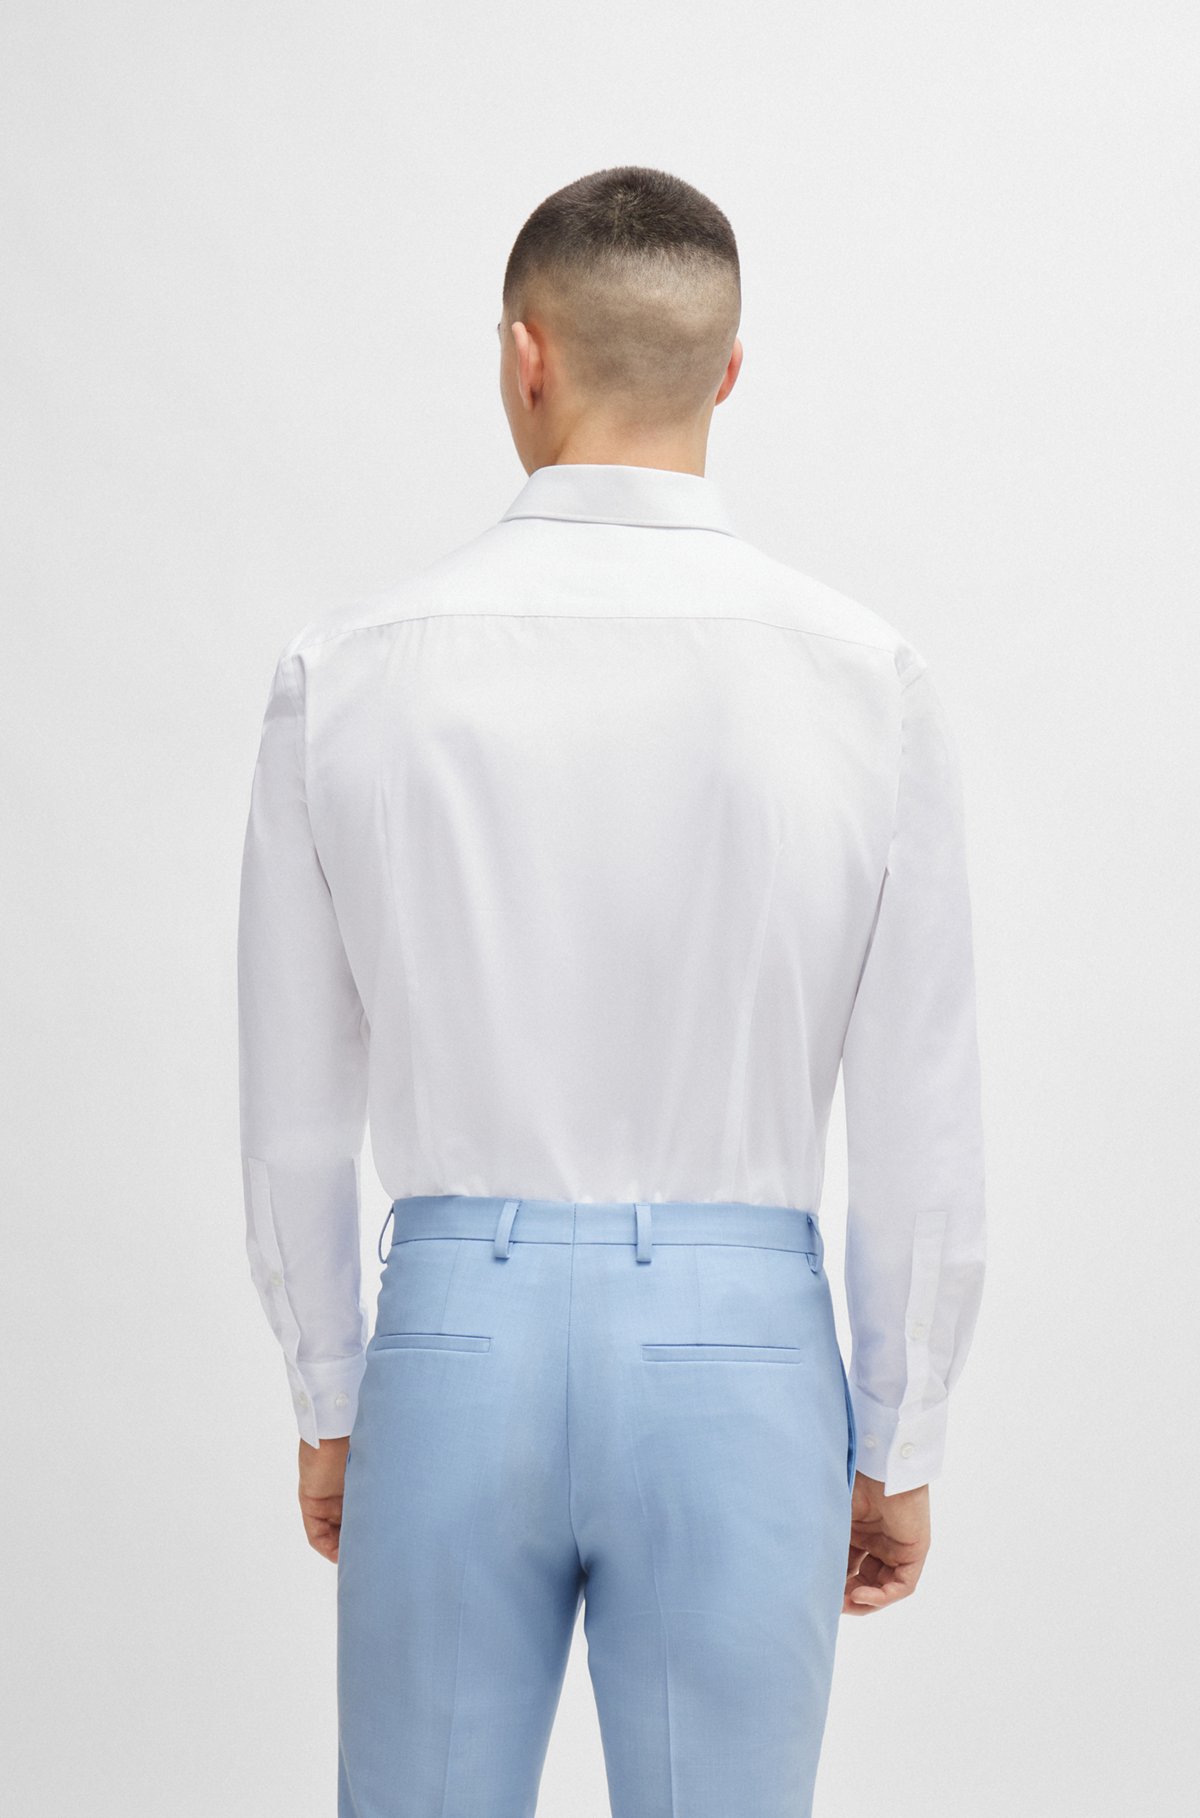 Slim-Fit Hemd aus bügelleichter Baumwoll-Popeline, Weiß